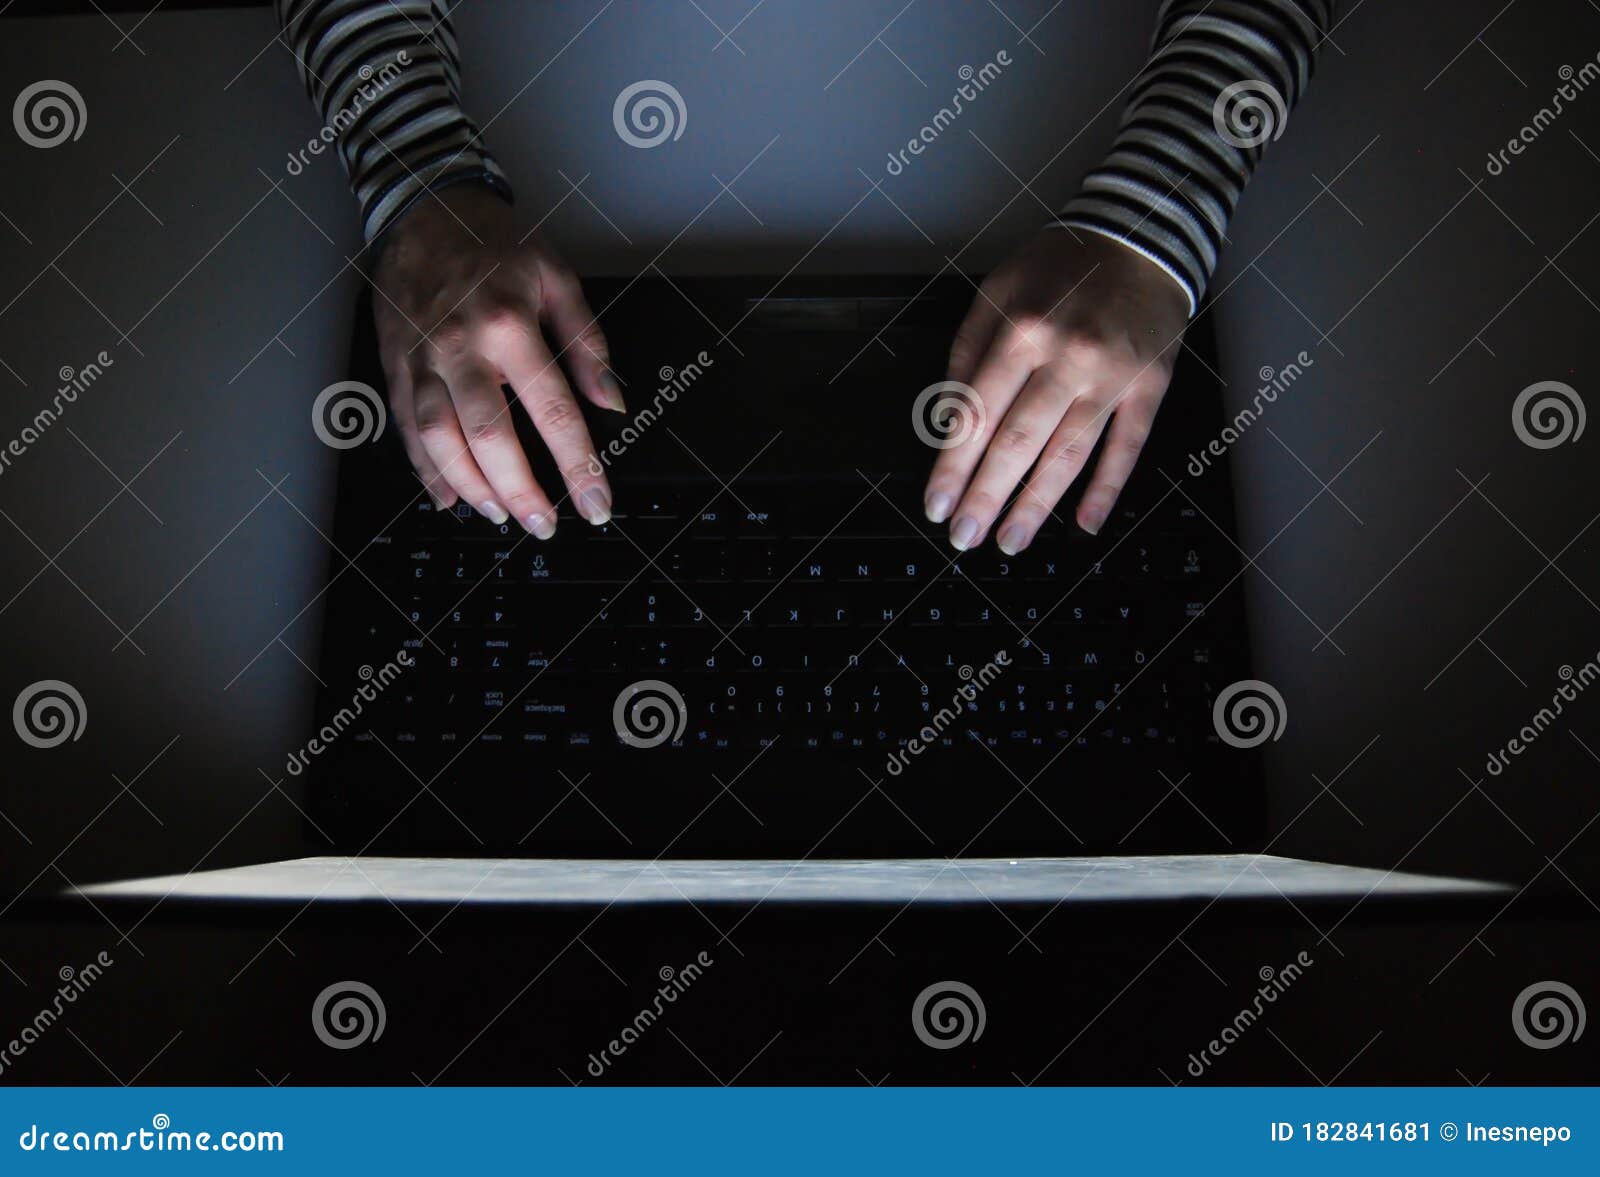 female hacker  typing in a keyboard on a laptop